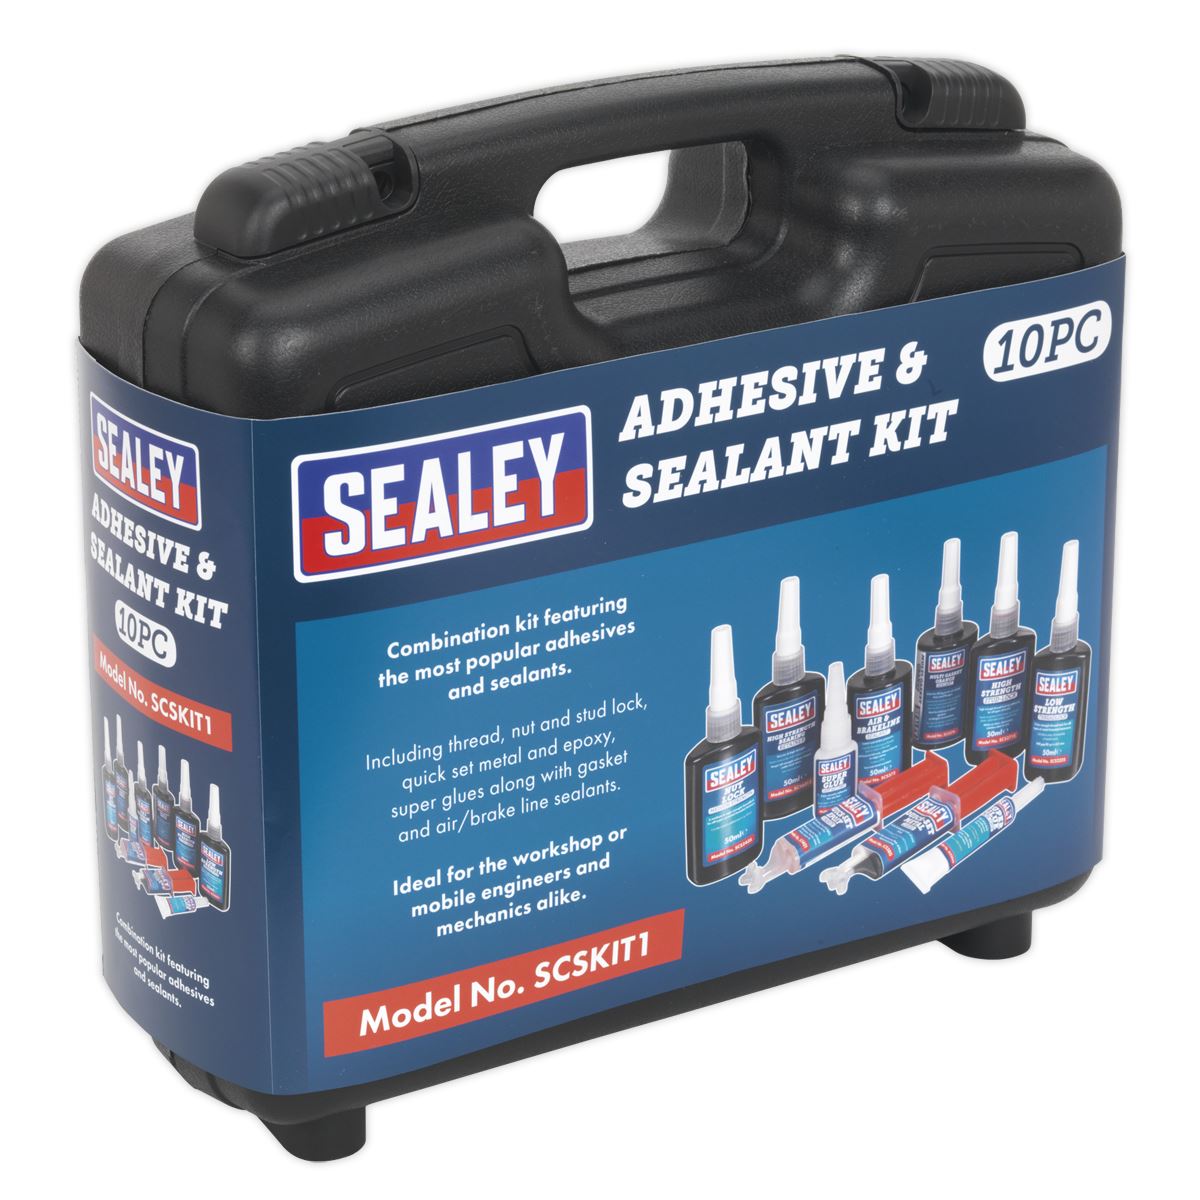 Sealey Adhesive & Sealant Kit 10pc